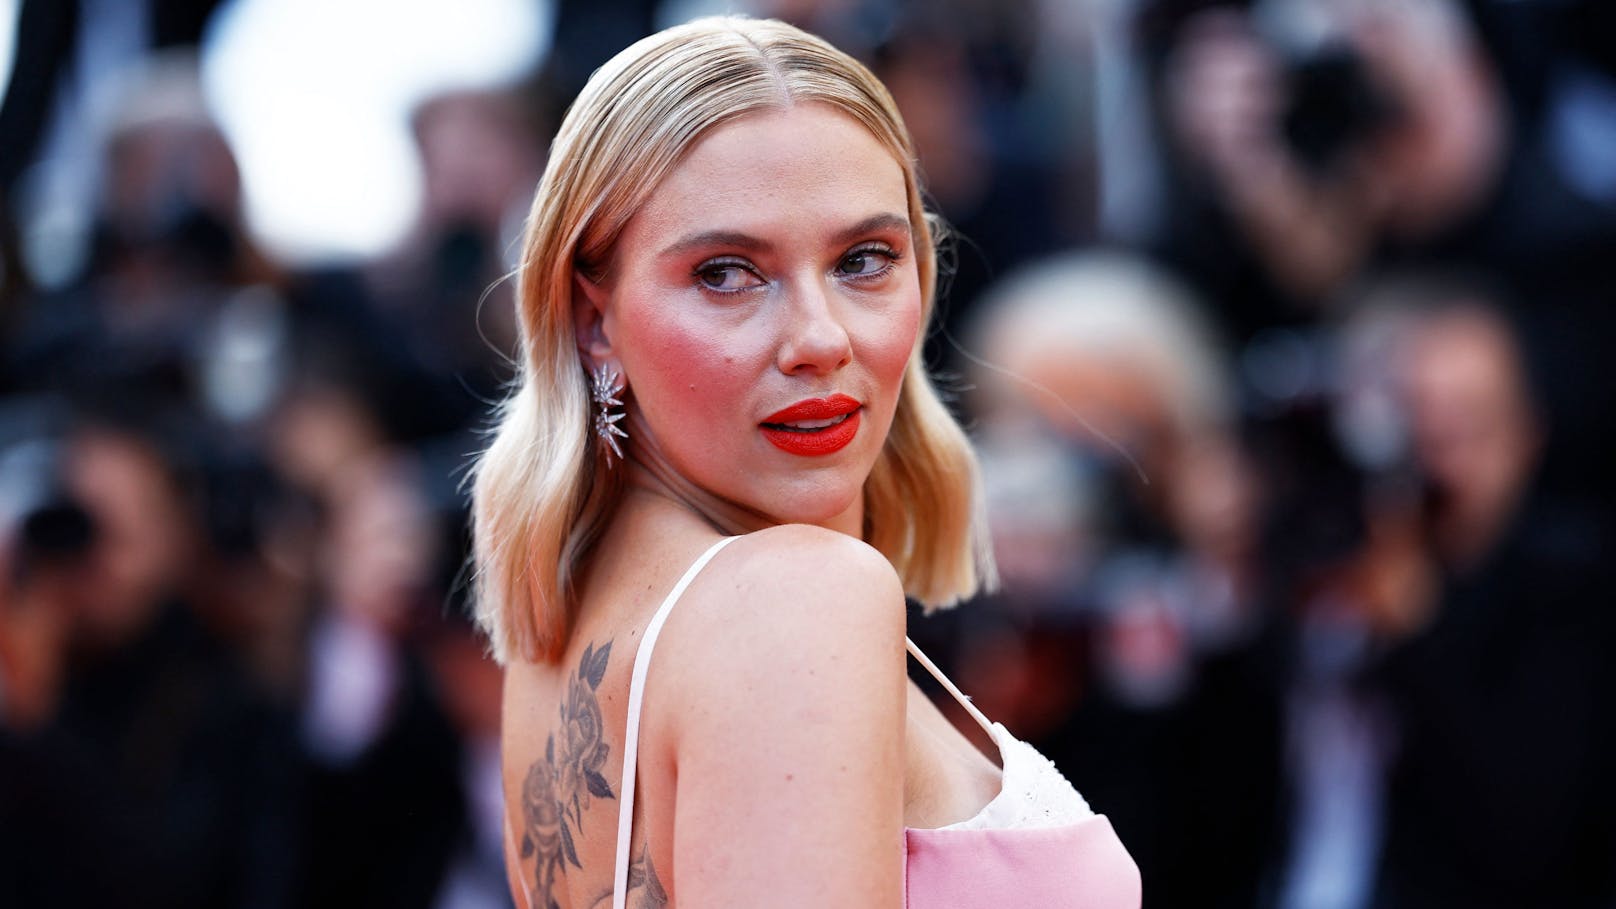 Streit um KI: Scarlett Johansson schaltet Anwälte ein